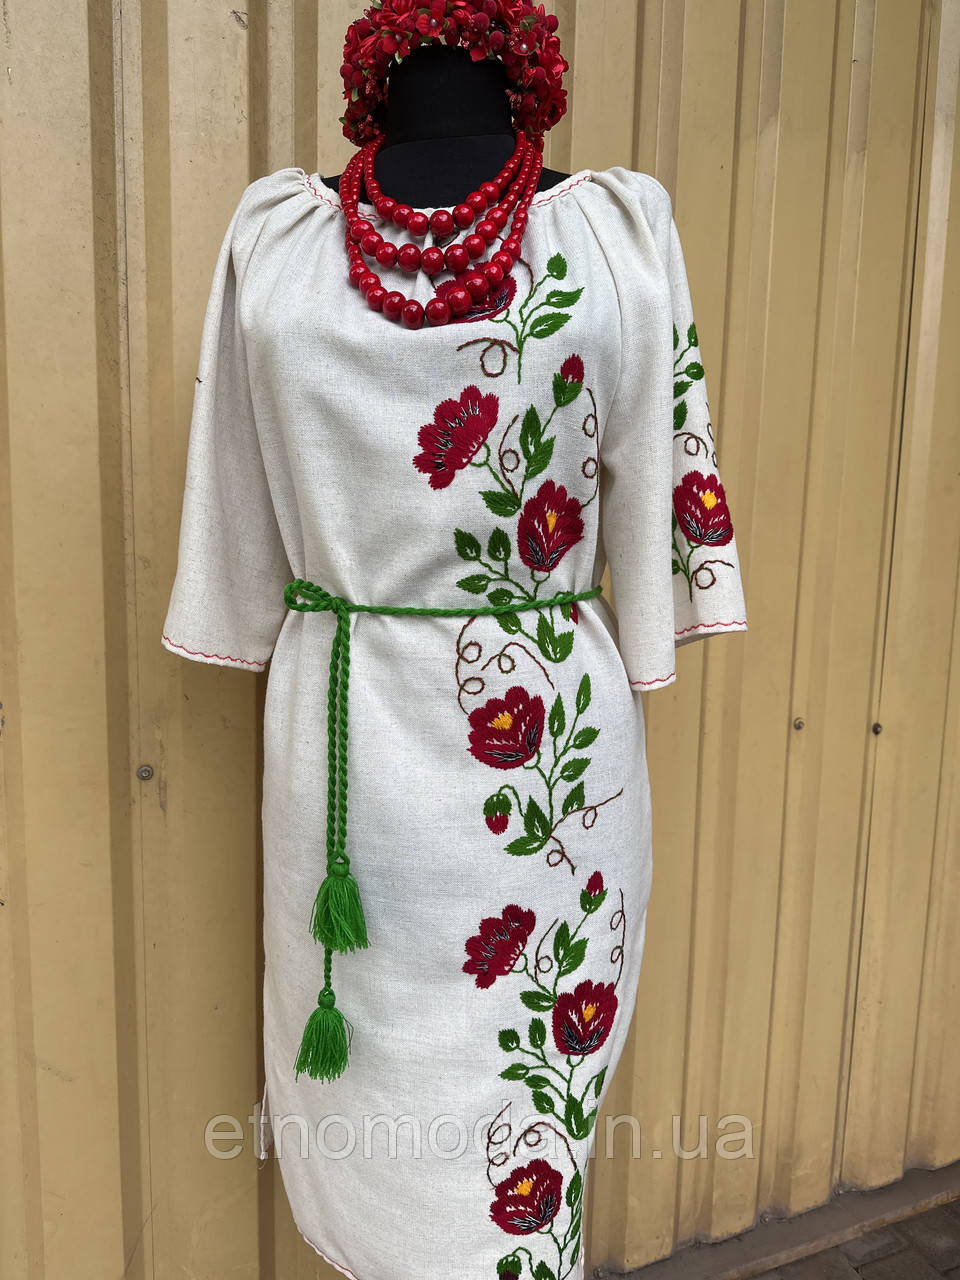 Сукня натуральний льон, ручна вишивка 022 Класика ОГ 114 см, фото 1